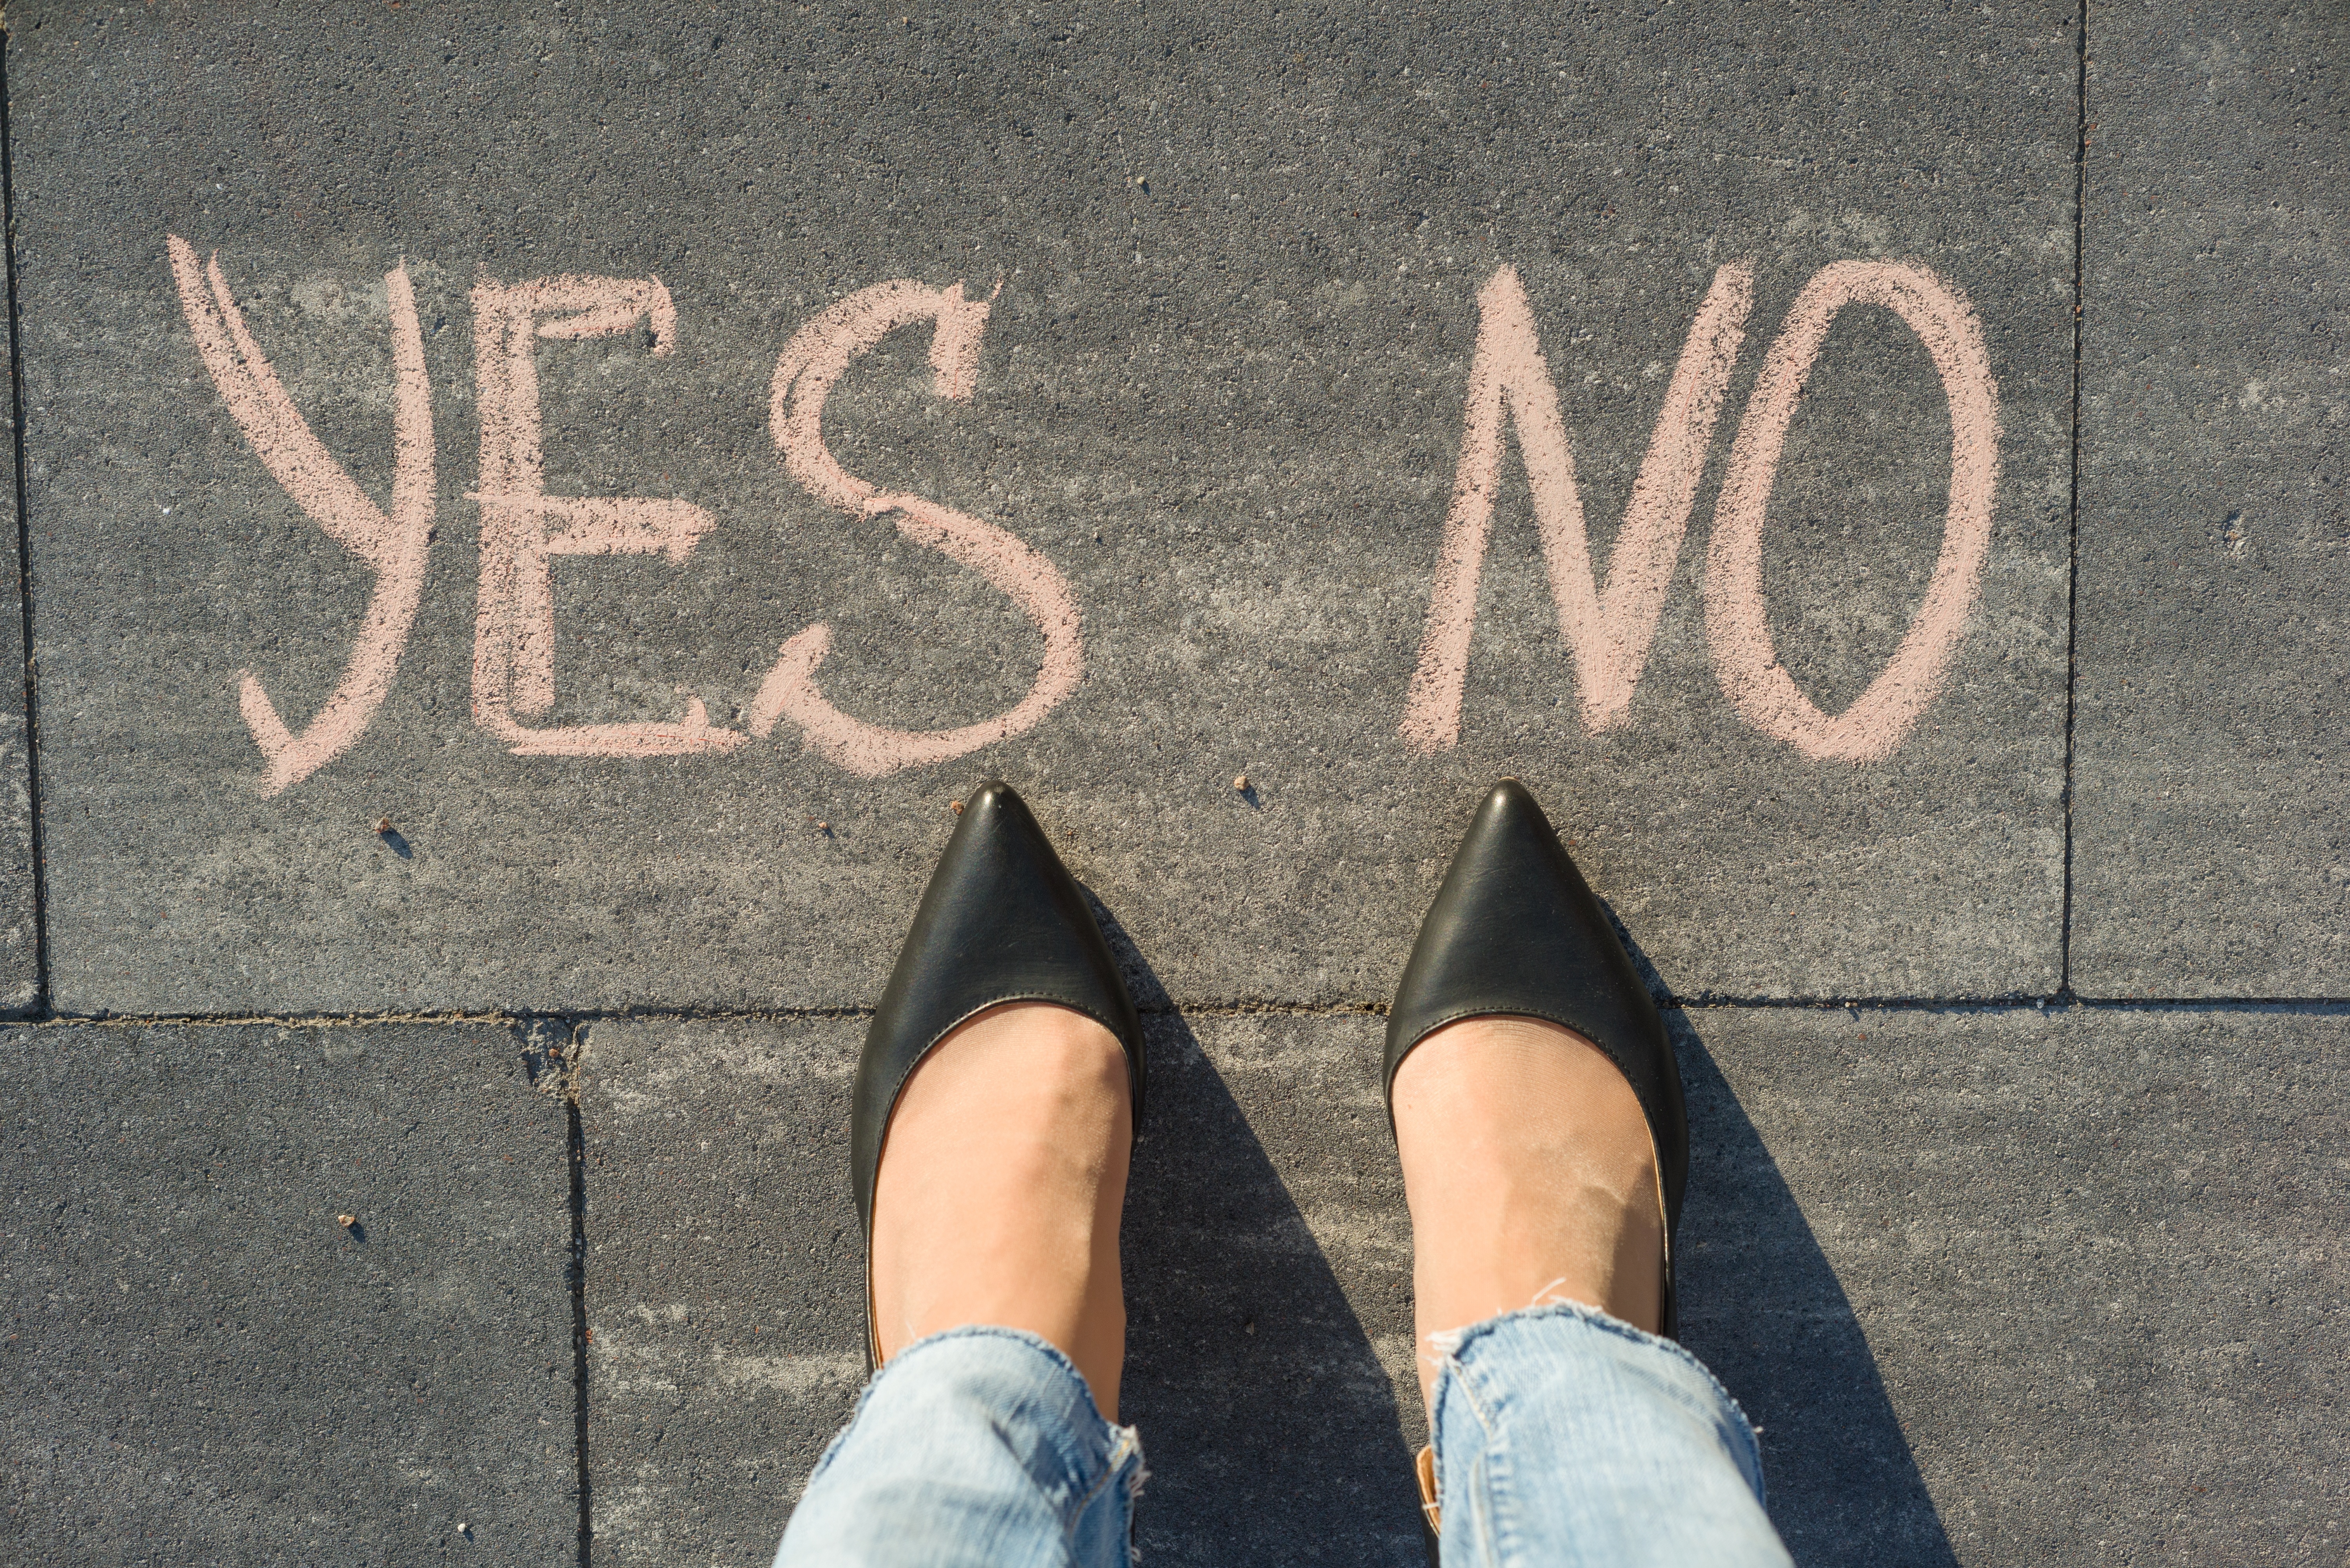 Markenbekanntheit Frauenschuhe "Yes" oder "No"